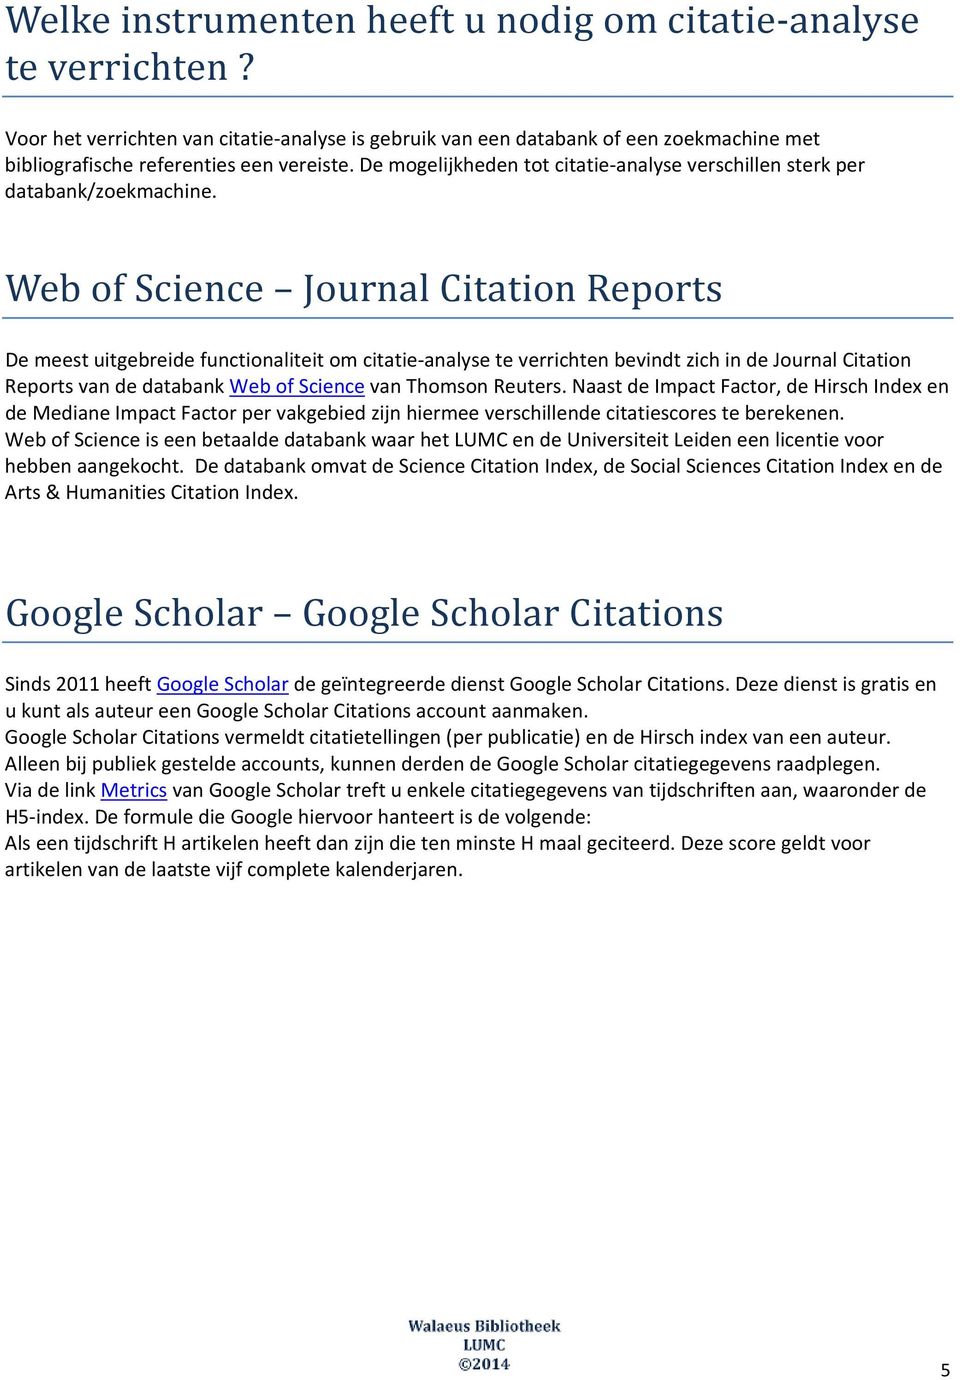 Web of Science Journal Citation Reports De meest uitgebreide functionaliteit om citatie analyse te verrichten bevindt zich in de Journal Citation Reports van de databank Web of Science van Thomson